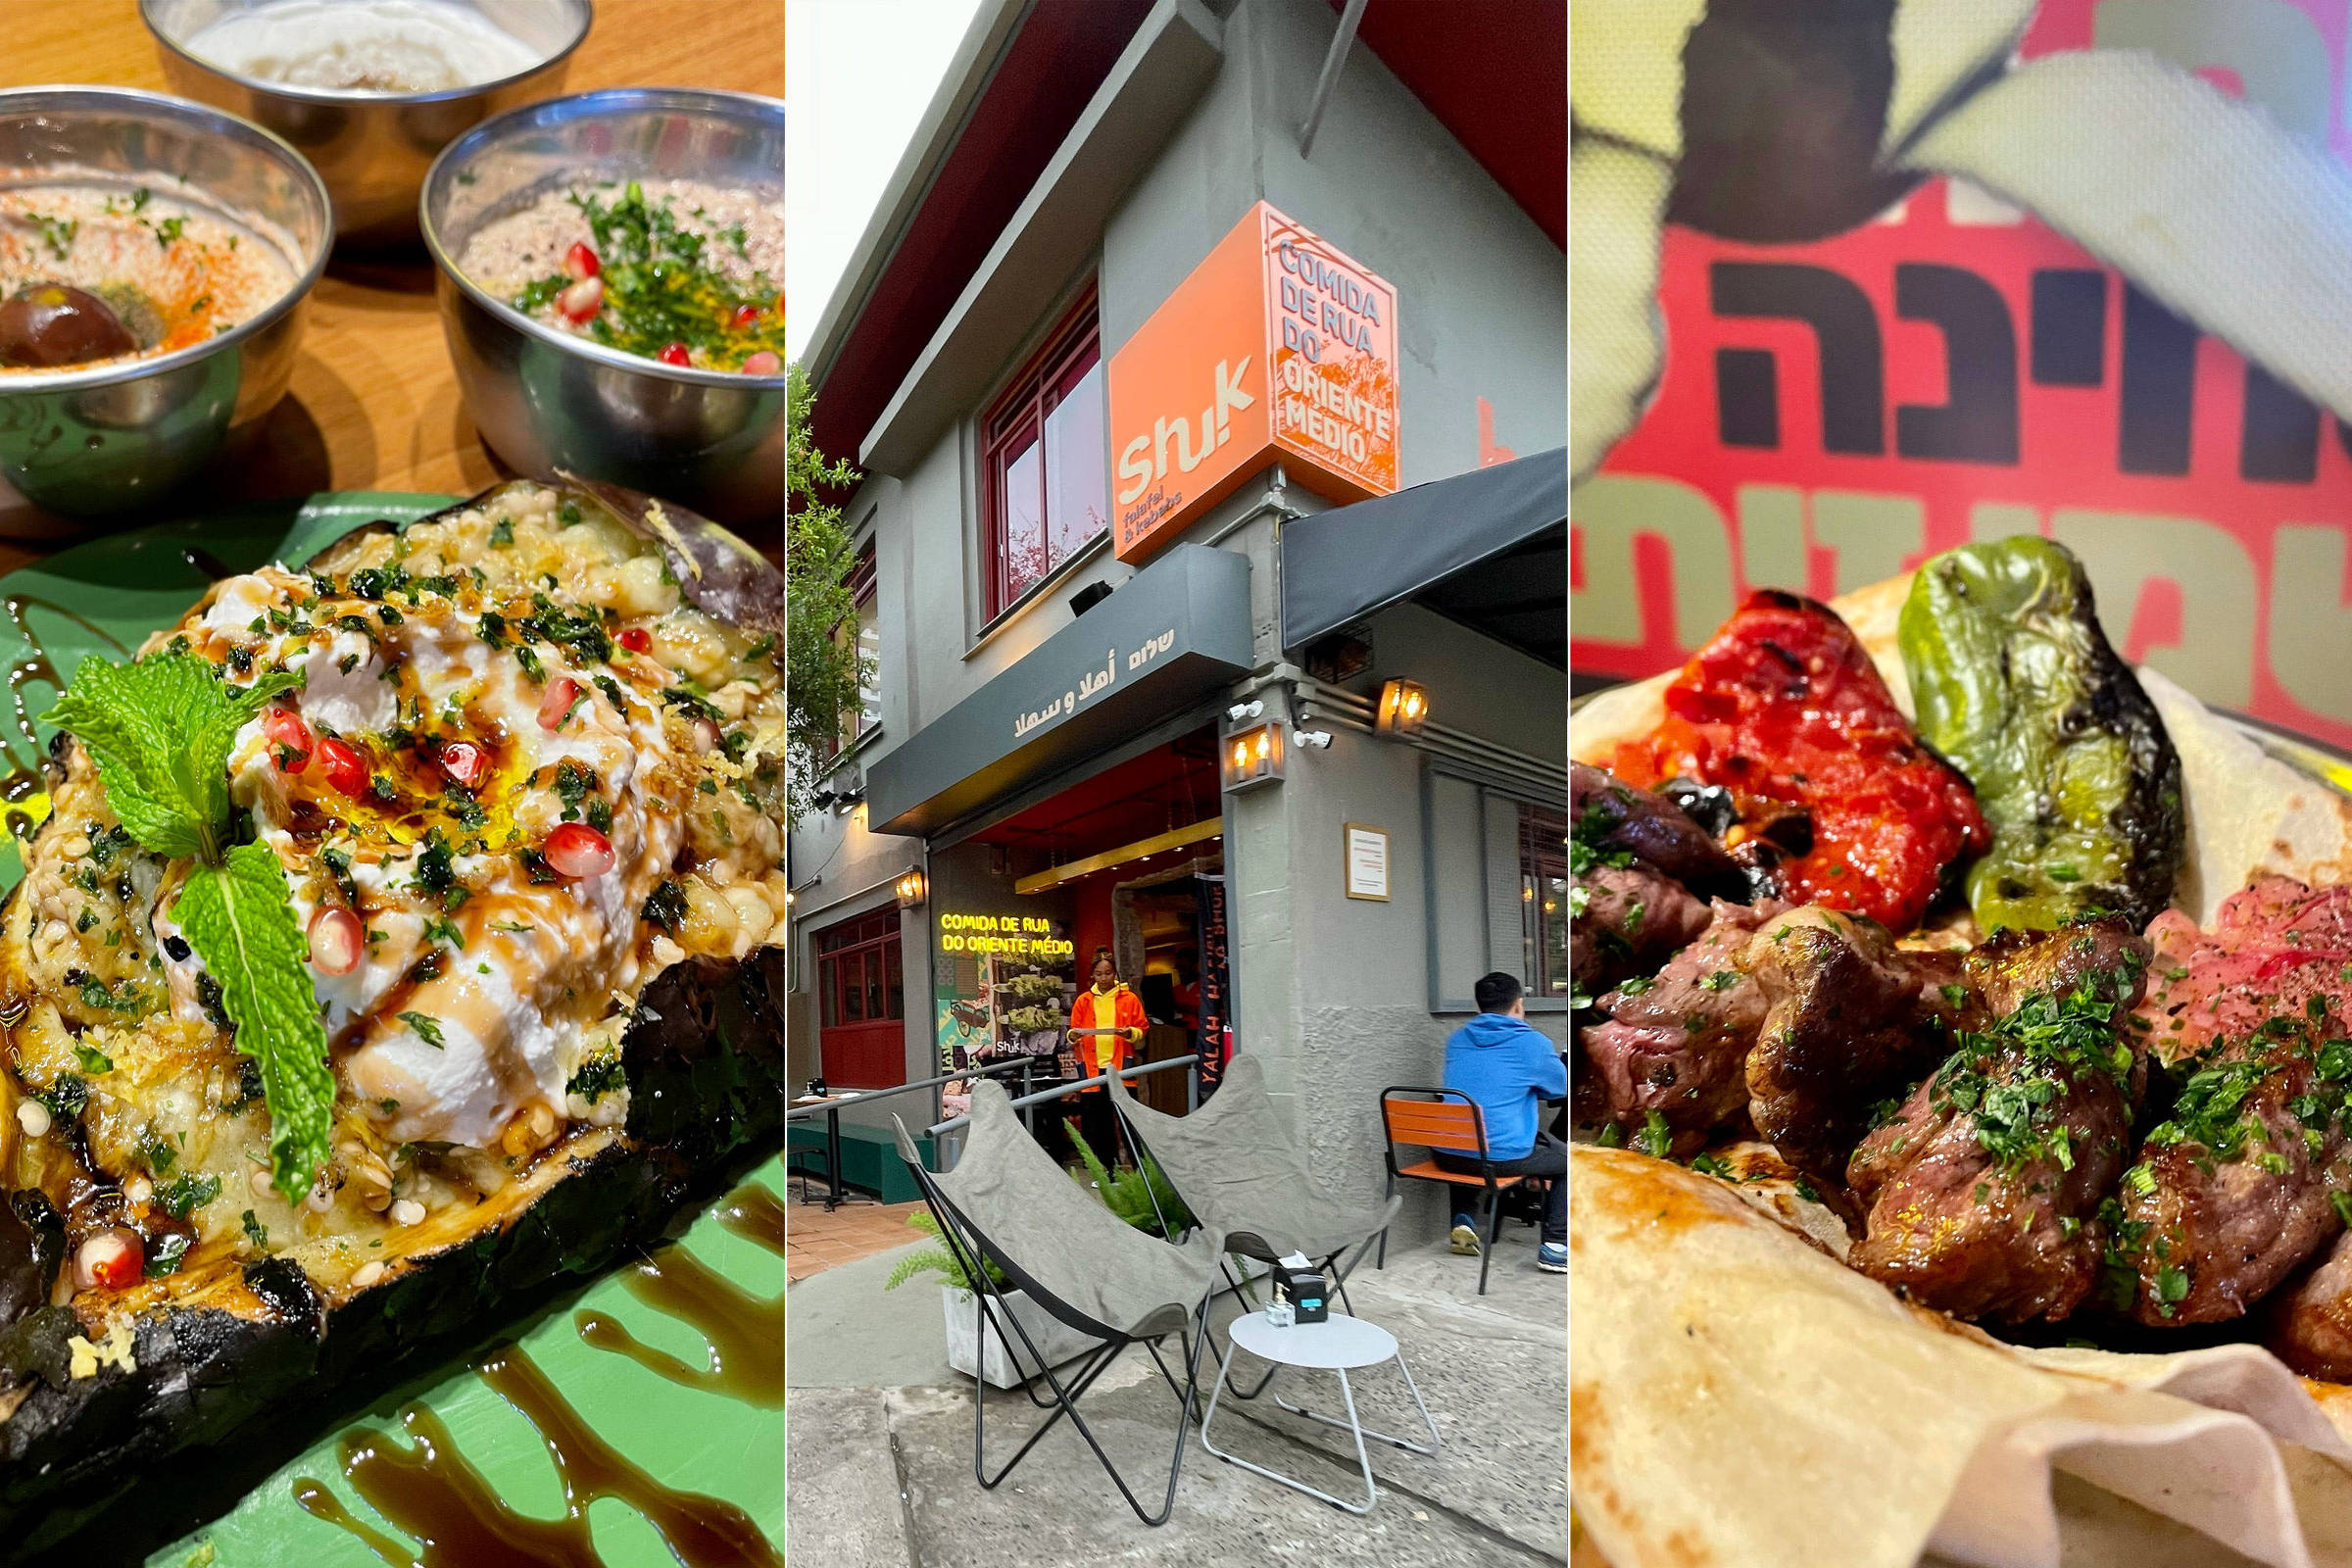 A comida de rua do Oriente Médio servida no Shuk, em Pinheiros